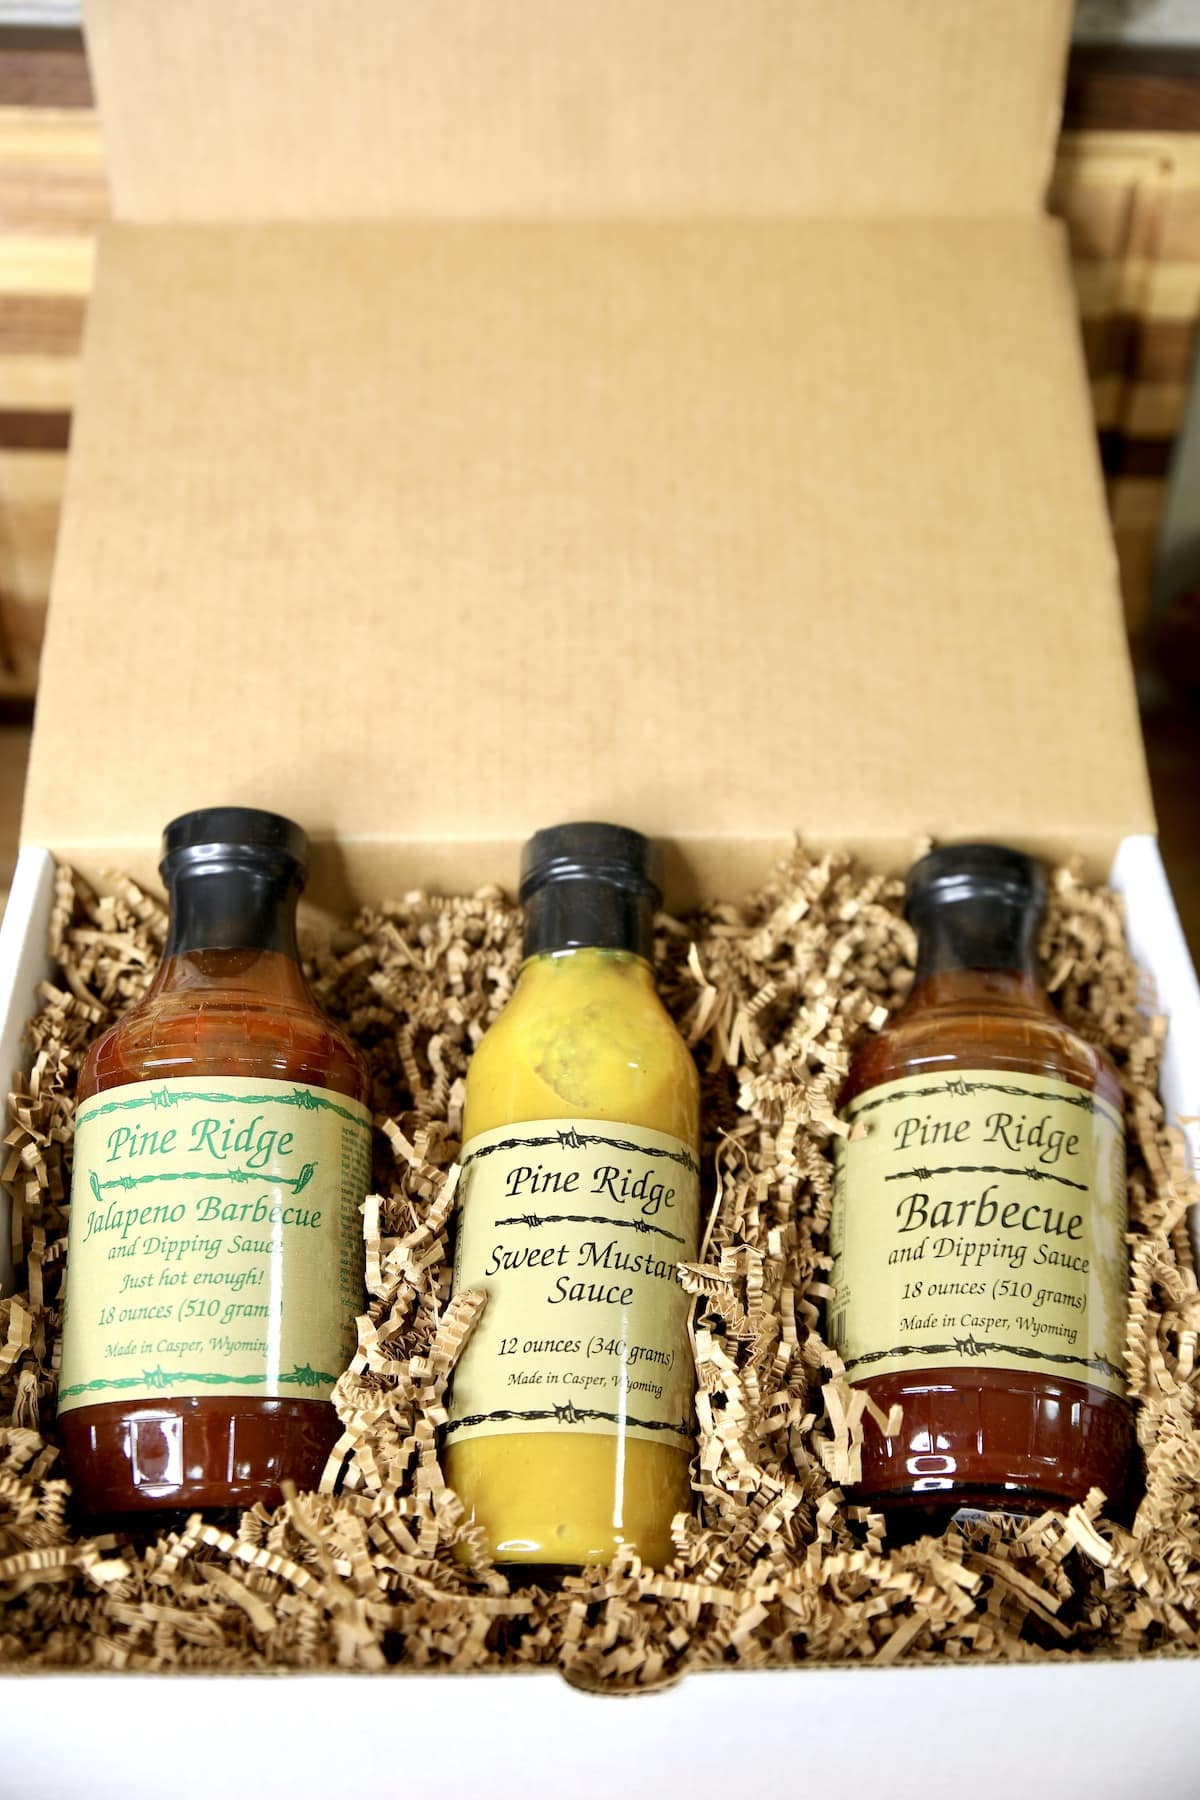 Pine Ridge BBQ Sauce Gift Box.